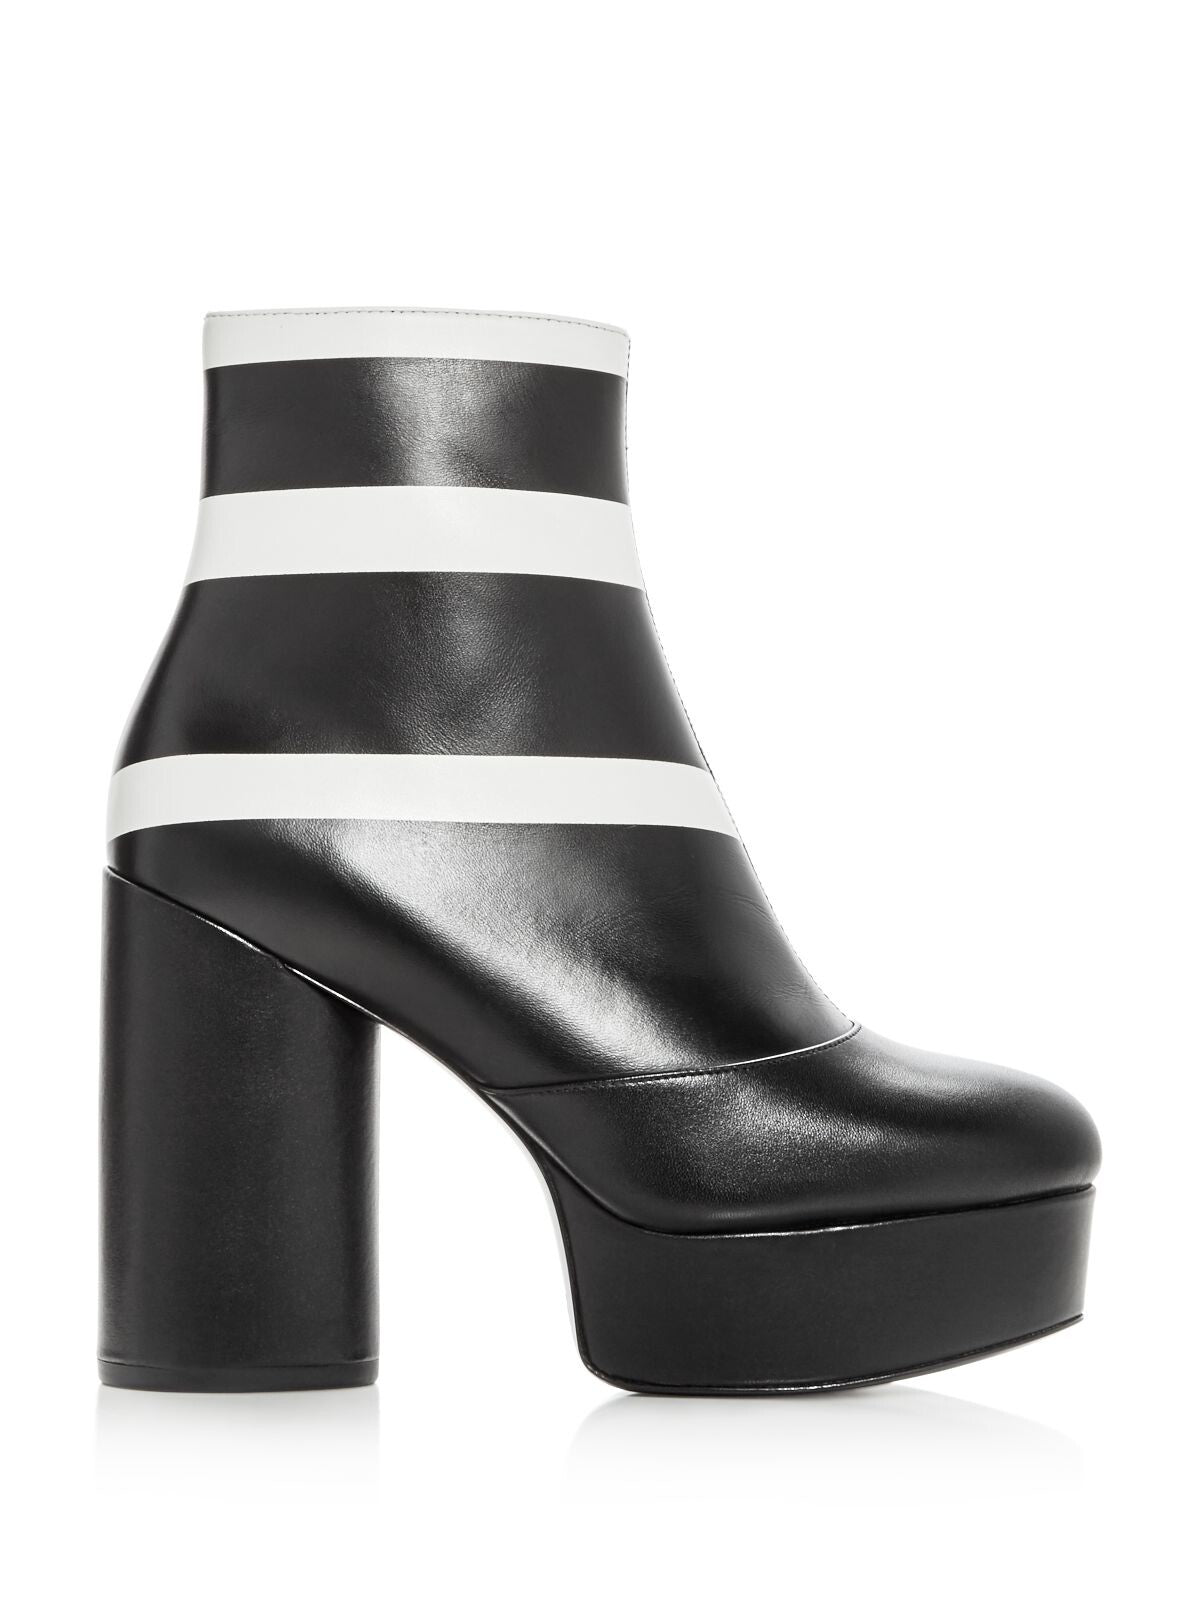 MARC JACOBS Womens Black Striped 1-1/2" Platform Comfort Amber Round Toe Block Heel Zip-Up Leather Booties 39.5